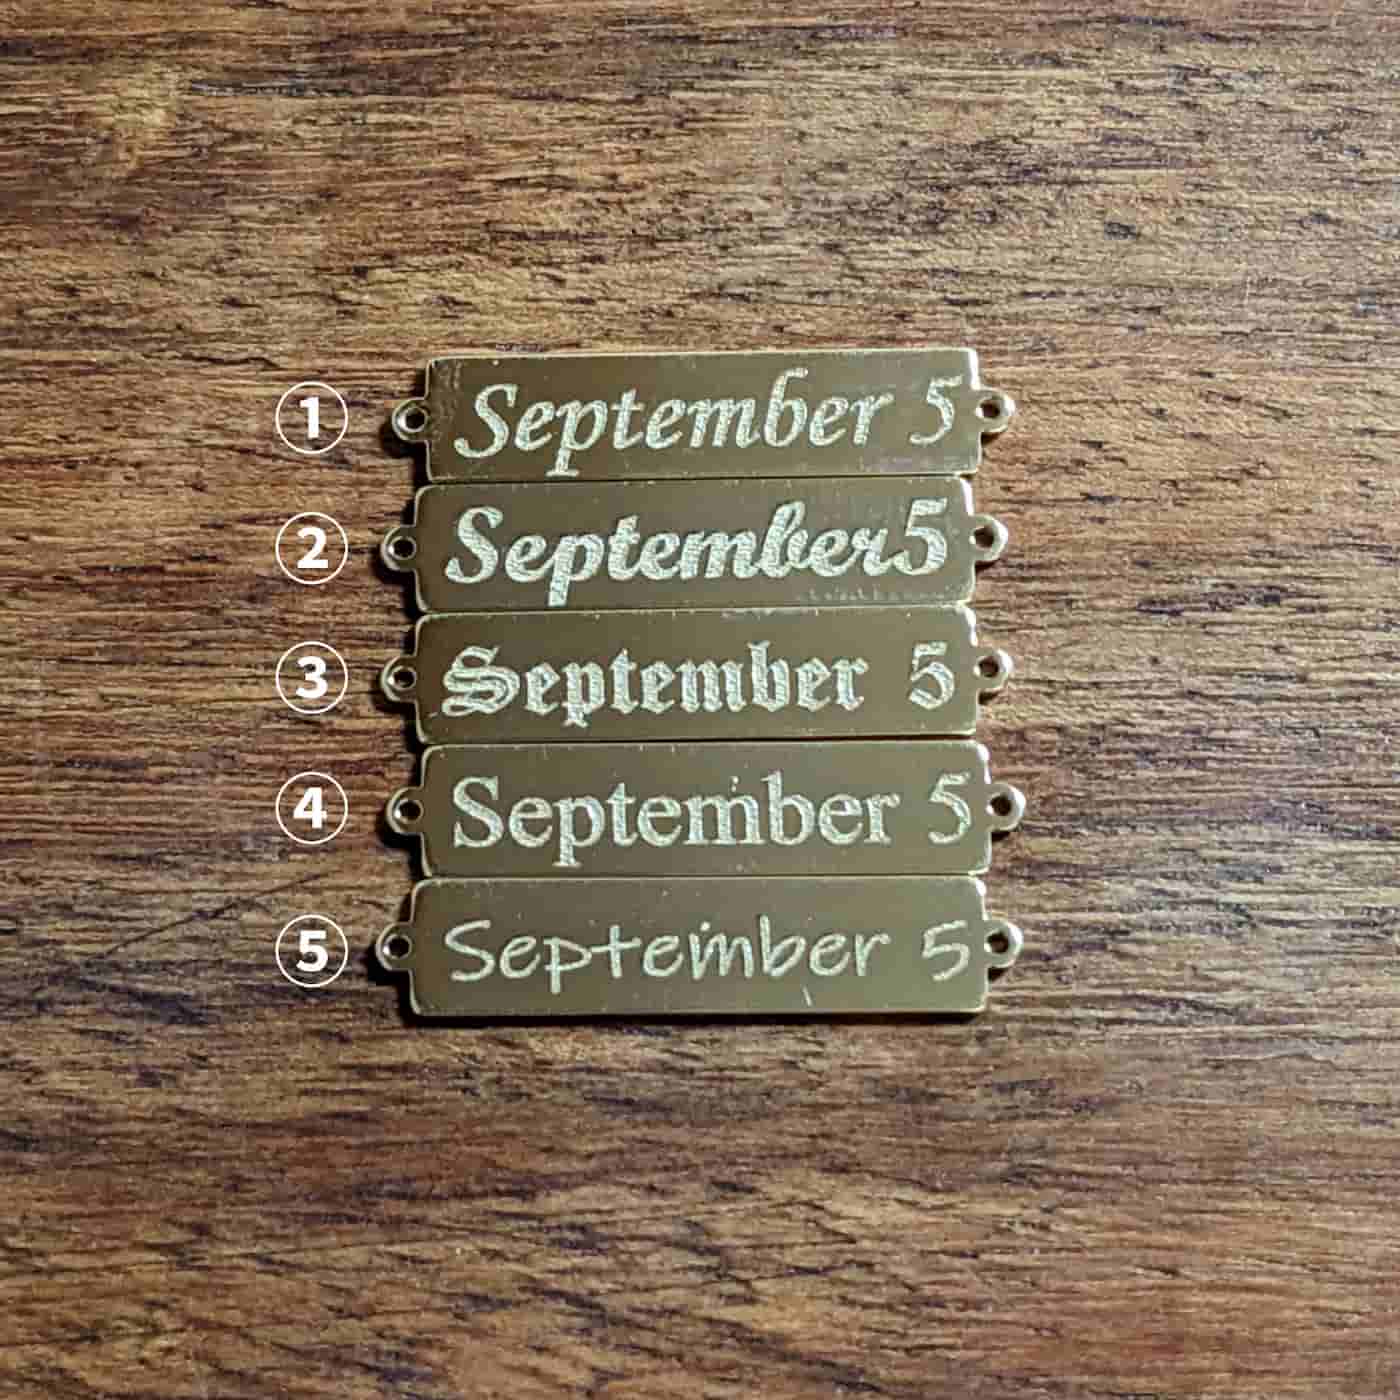 ラボグロウンダイヤモンド専門店『 September５』（セプテンバー５）のK 18イエローゴールドダイヤモンドプレートブレスレットに書くごとができる文字５種類。エレガントかつ爽やかさを印象つけたい方に。セミオーダーで好きな文字が書けるK18のプレートチェーンブレスレット。名前やイニシャル、記念日、誕生日、出産記念日、ペットの名前、推し活に好きな文字を入れて自分だけのオリジナルブレスレットをお作りできます。（文字入れ無料） 18金なので汗や水に強く、永くお使いいただけます。プレート部分は２㎝、全長17㎝調整可能なスライドチェーンなので、誰でも簡単に装着可能、ご自分のお好きな長さに合わせてお使いいただけます。山梨県甲府市の提携工房の職人が一つ一つ手作りで造っているため、上質で安定した品質の商品をお届けします。シンプルなデザインの中に、キラッと光る0.012ctのラボグロウンダイヤモンドのチャームがプレートの横で揺れるのも可愛いです。私から私へのご褒美ジュエリーとして、また母から子へ、パートナーへのプレゼント、また大切な人とのペアブレスレットとしてもおすすめです。自分だけのセミオーダーで日常に華やかさをプラス、ぜひお手元に、この輝きを加えてみてください。 また、エンドプレートには September5の数字の５を18金のプレートであしらいました。 送料無料で全国どこでもお届けします。 ※お取り扱いには、充分にご注意ください。